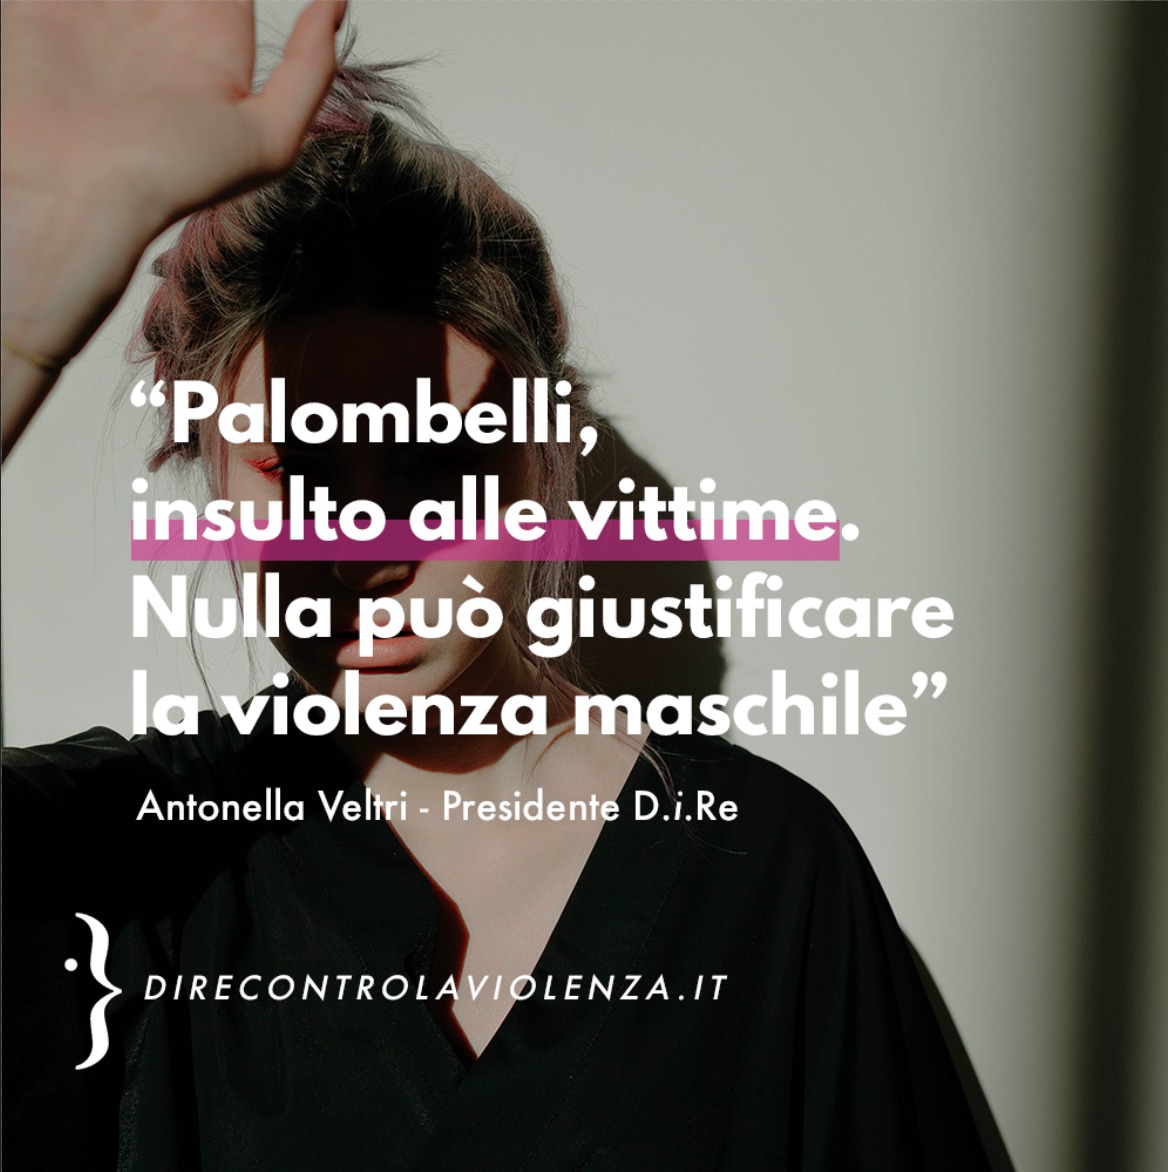 Veltri, presidente D.i.Re: "Palombelli, le scuse non bastano. È vittimizzazione secondaria"